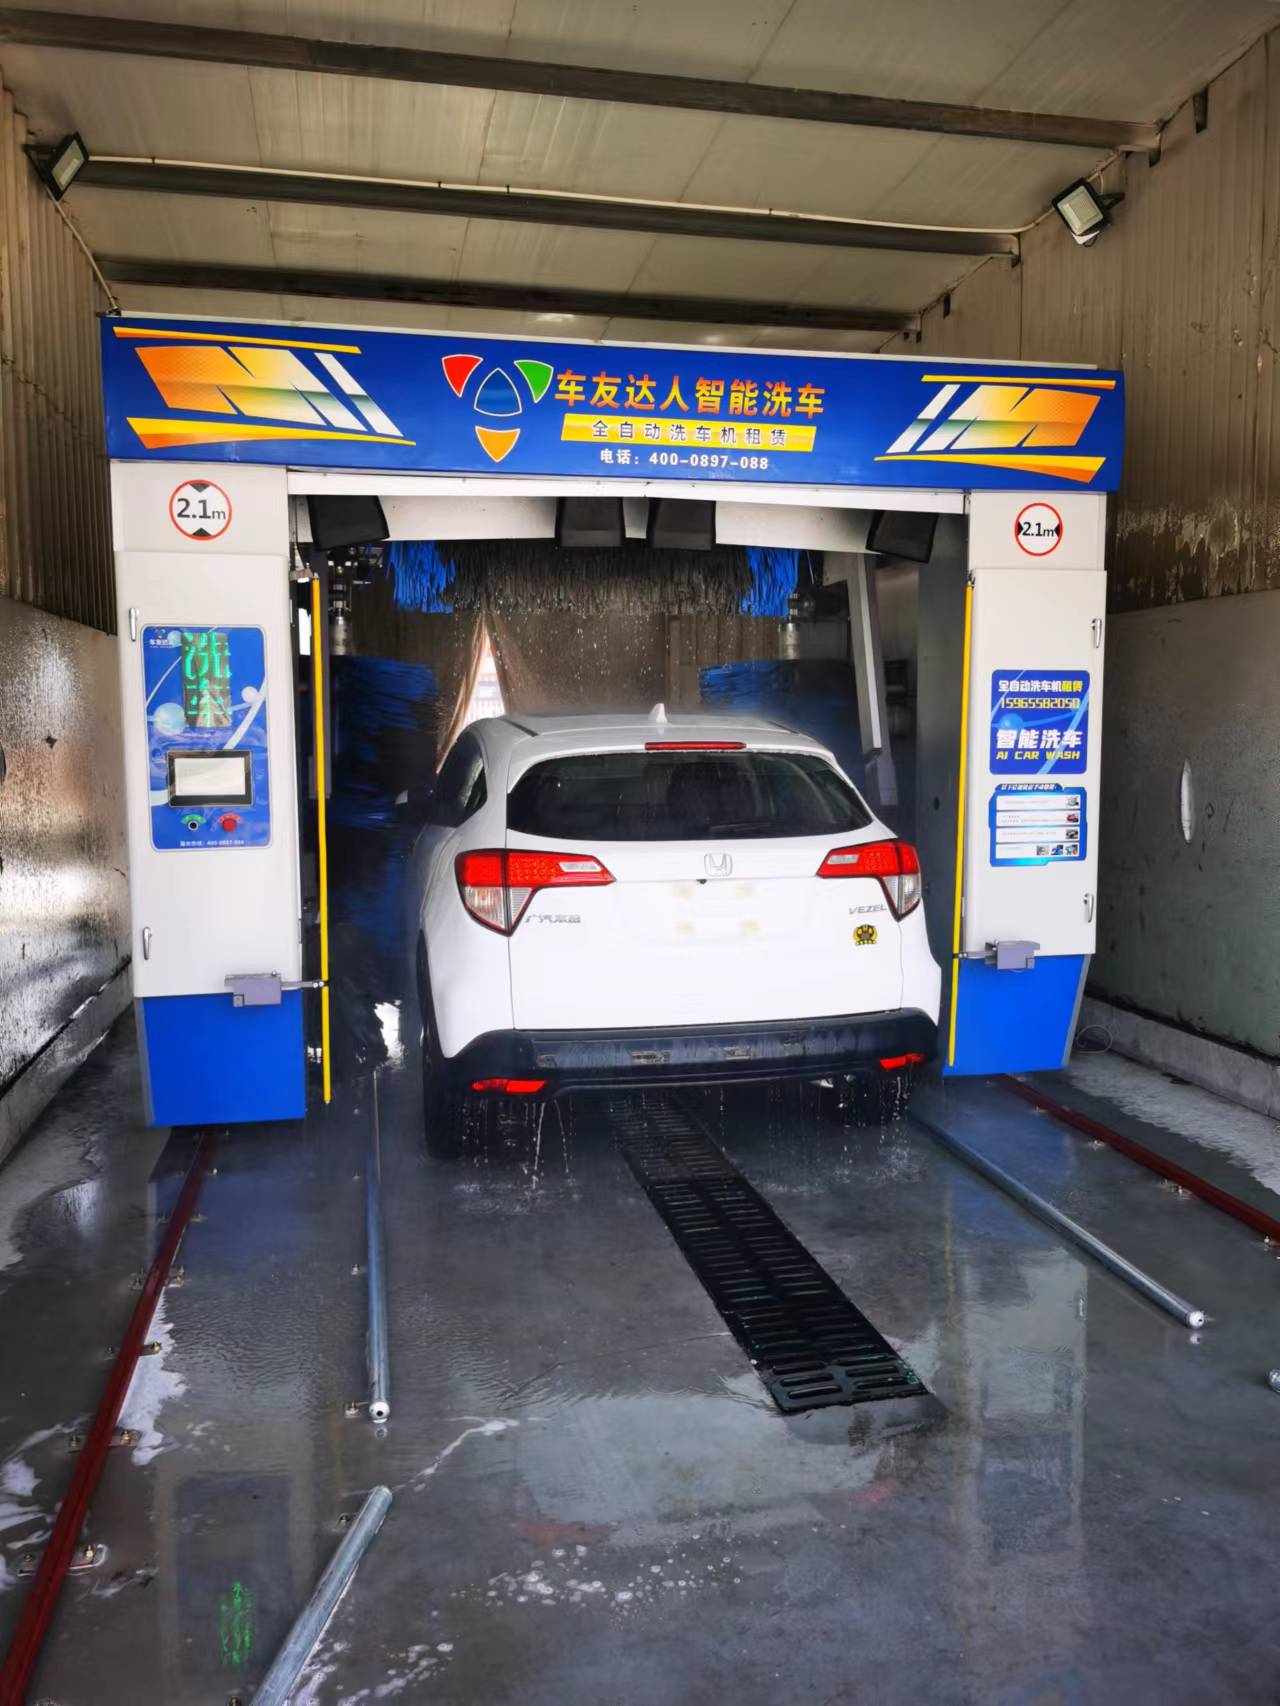 车主青睐的智能洗车服务，和人工洗车相比有何优势？